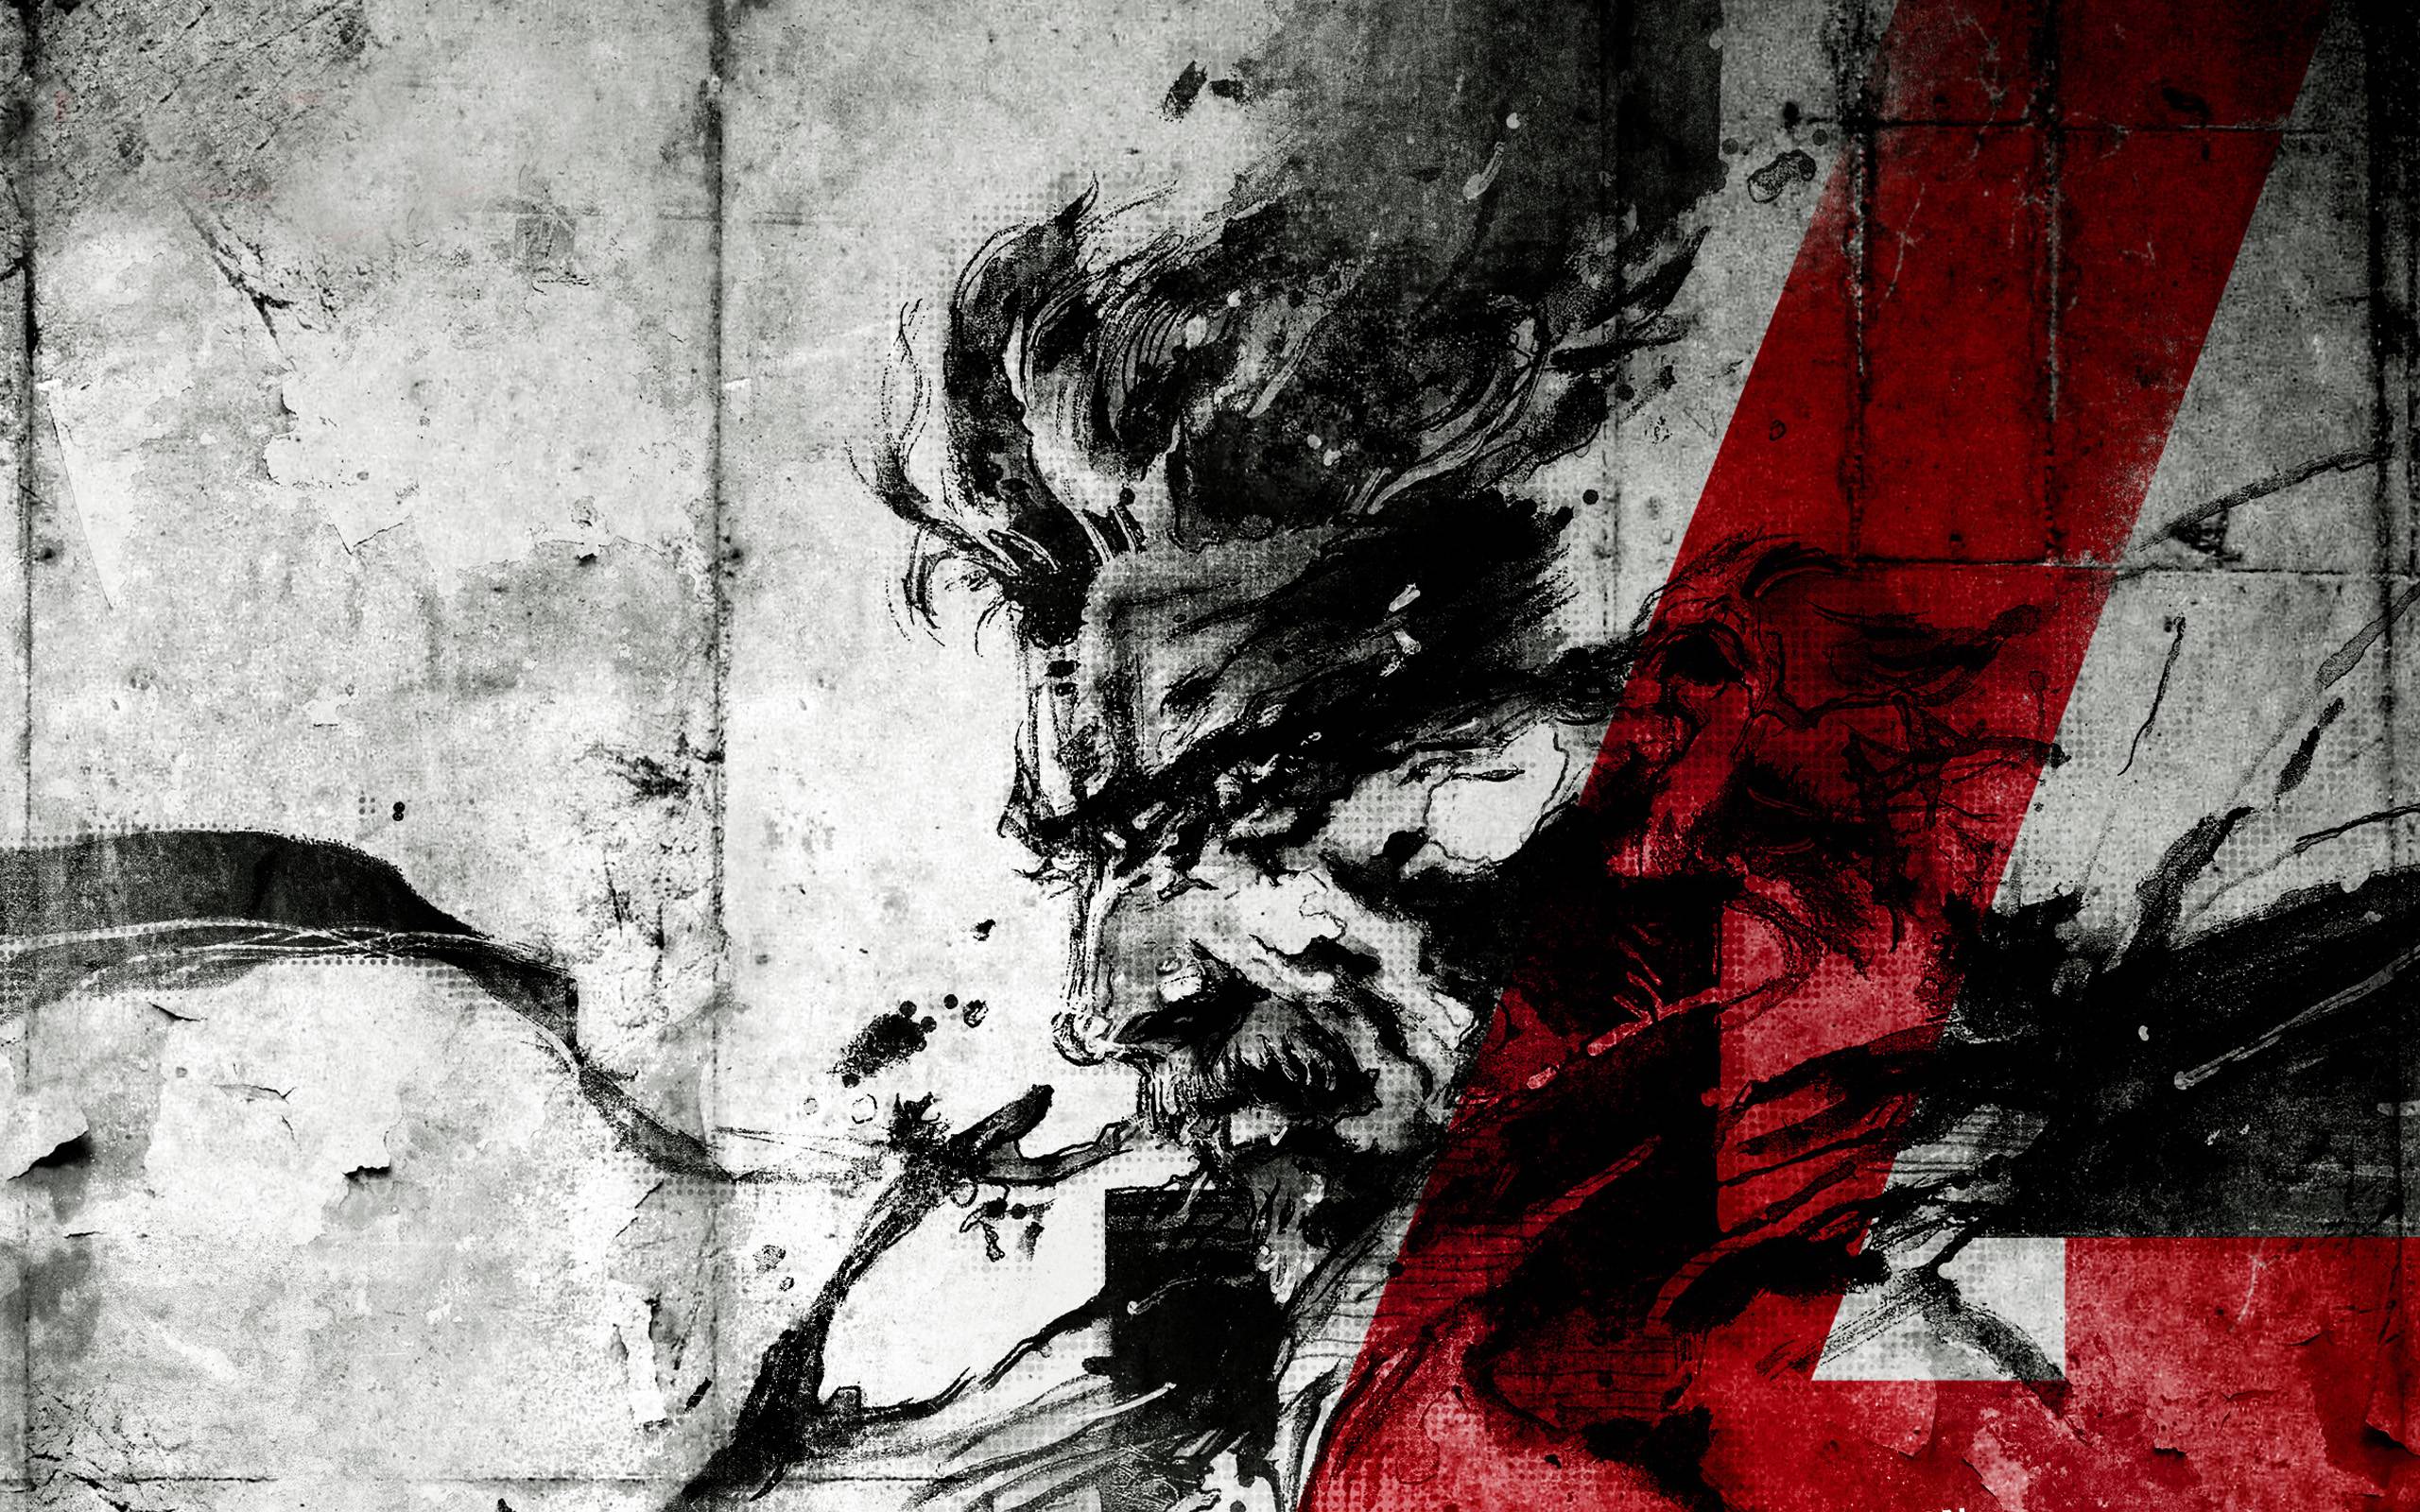 Download Metal Gear 4K's Main Characters Wallpaper